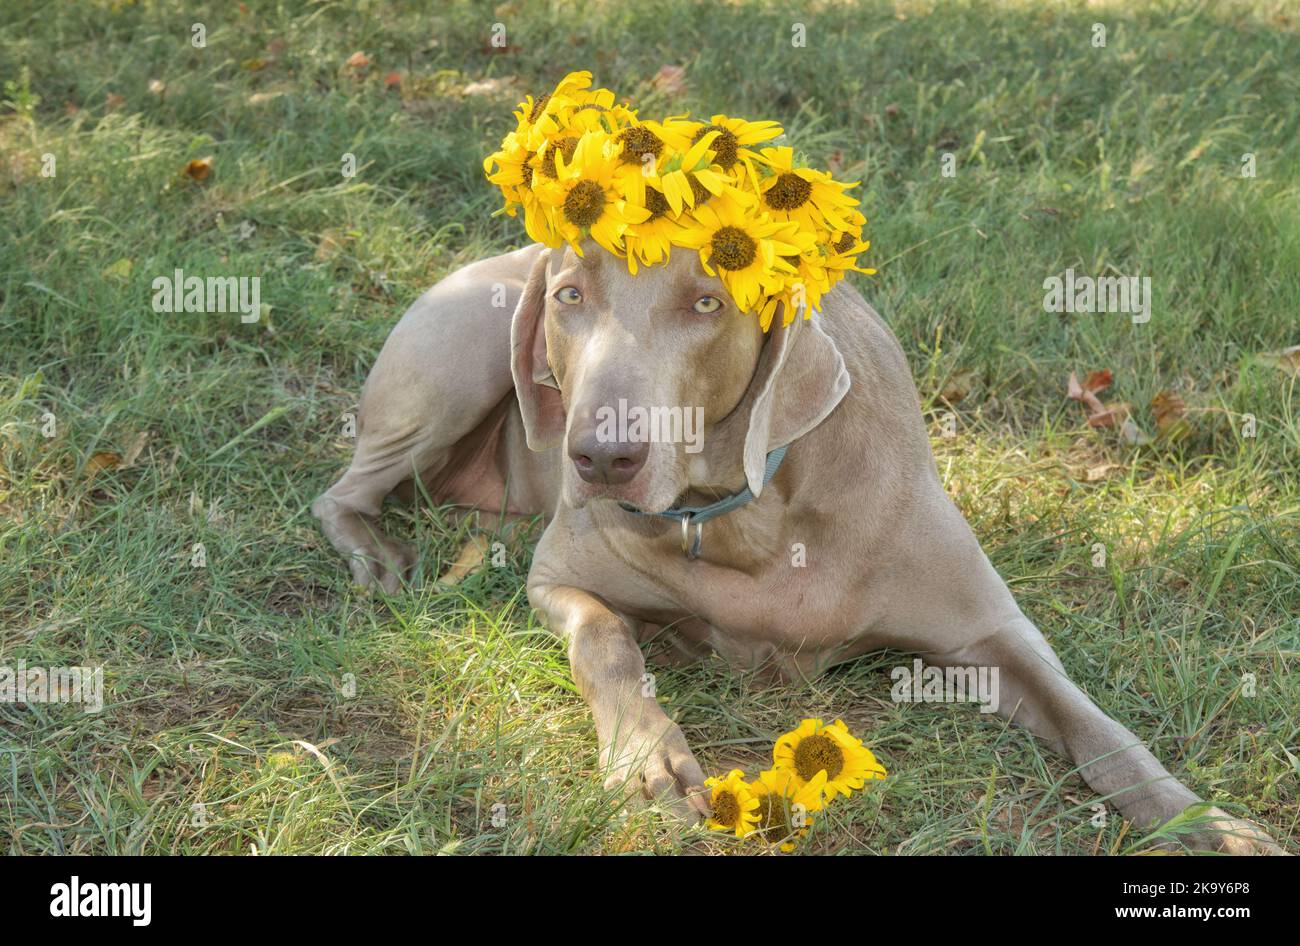 Hermoso perro Weimaraner tumbado en la hierba, usando una corona hecha de girasoles Foto de stock